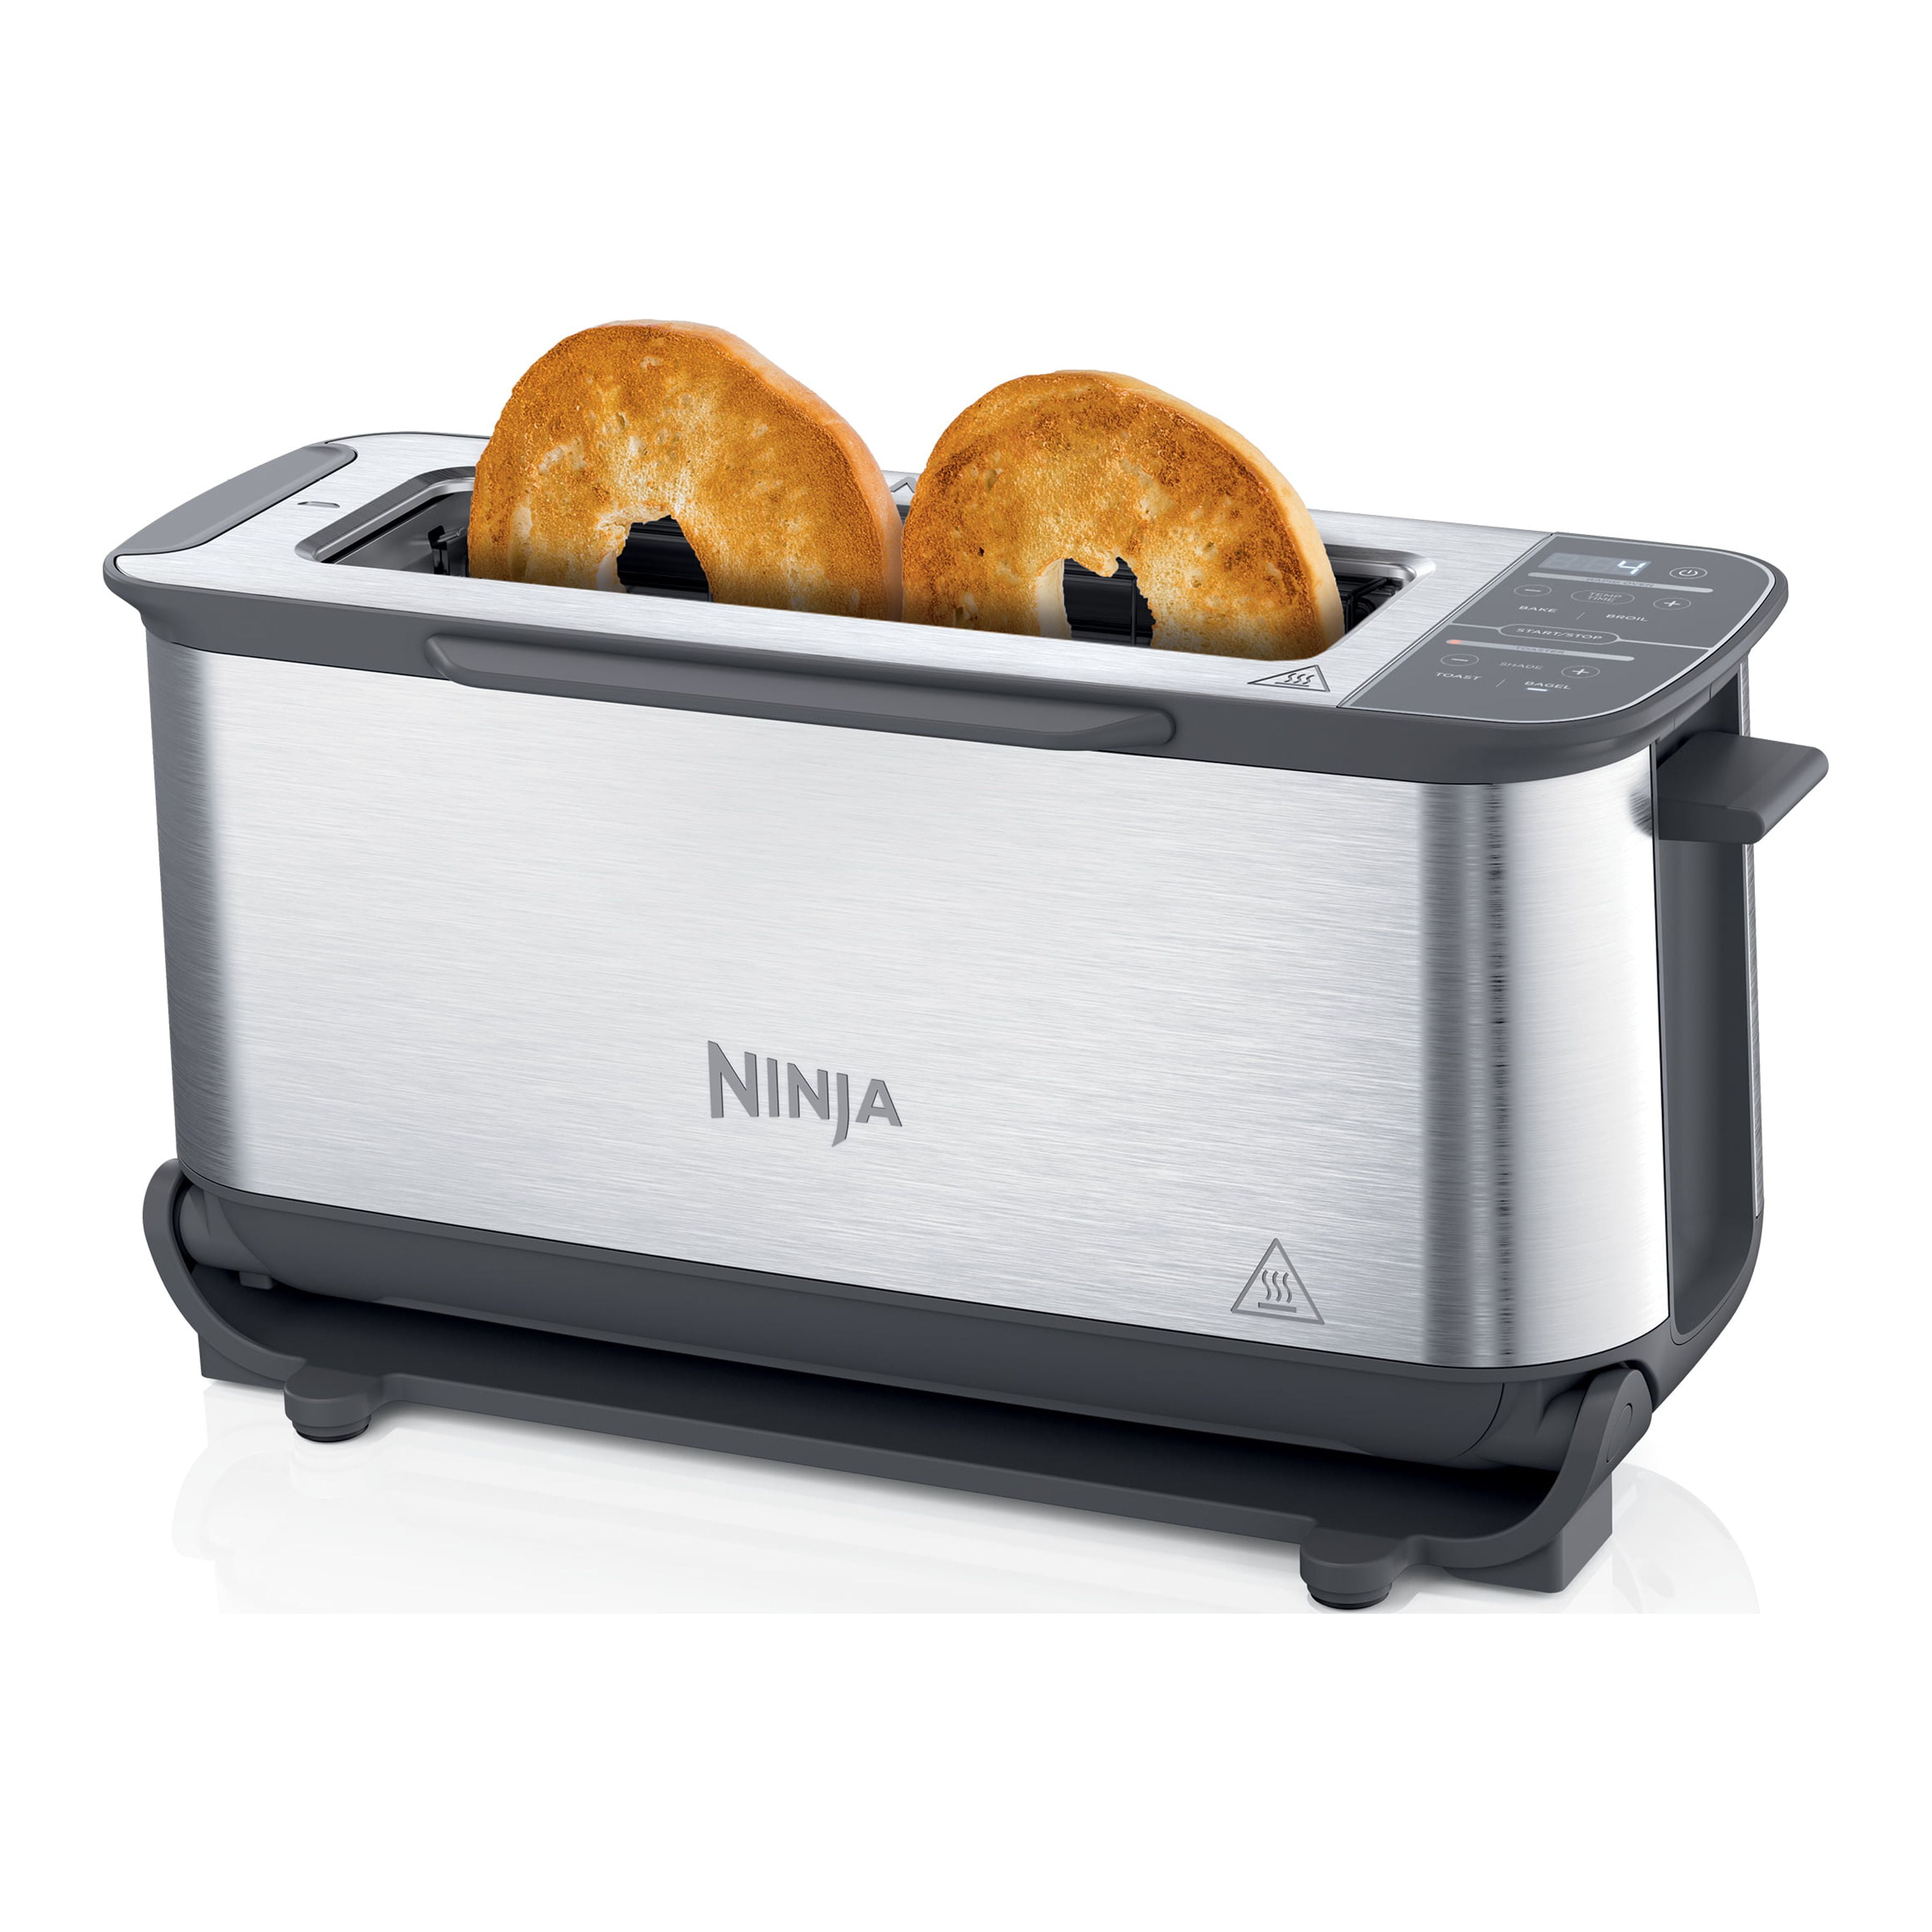 Ninja, Kitchen, Ninja Foodie Flip Toaster